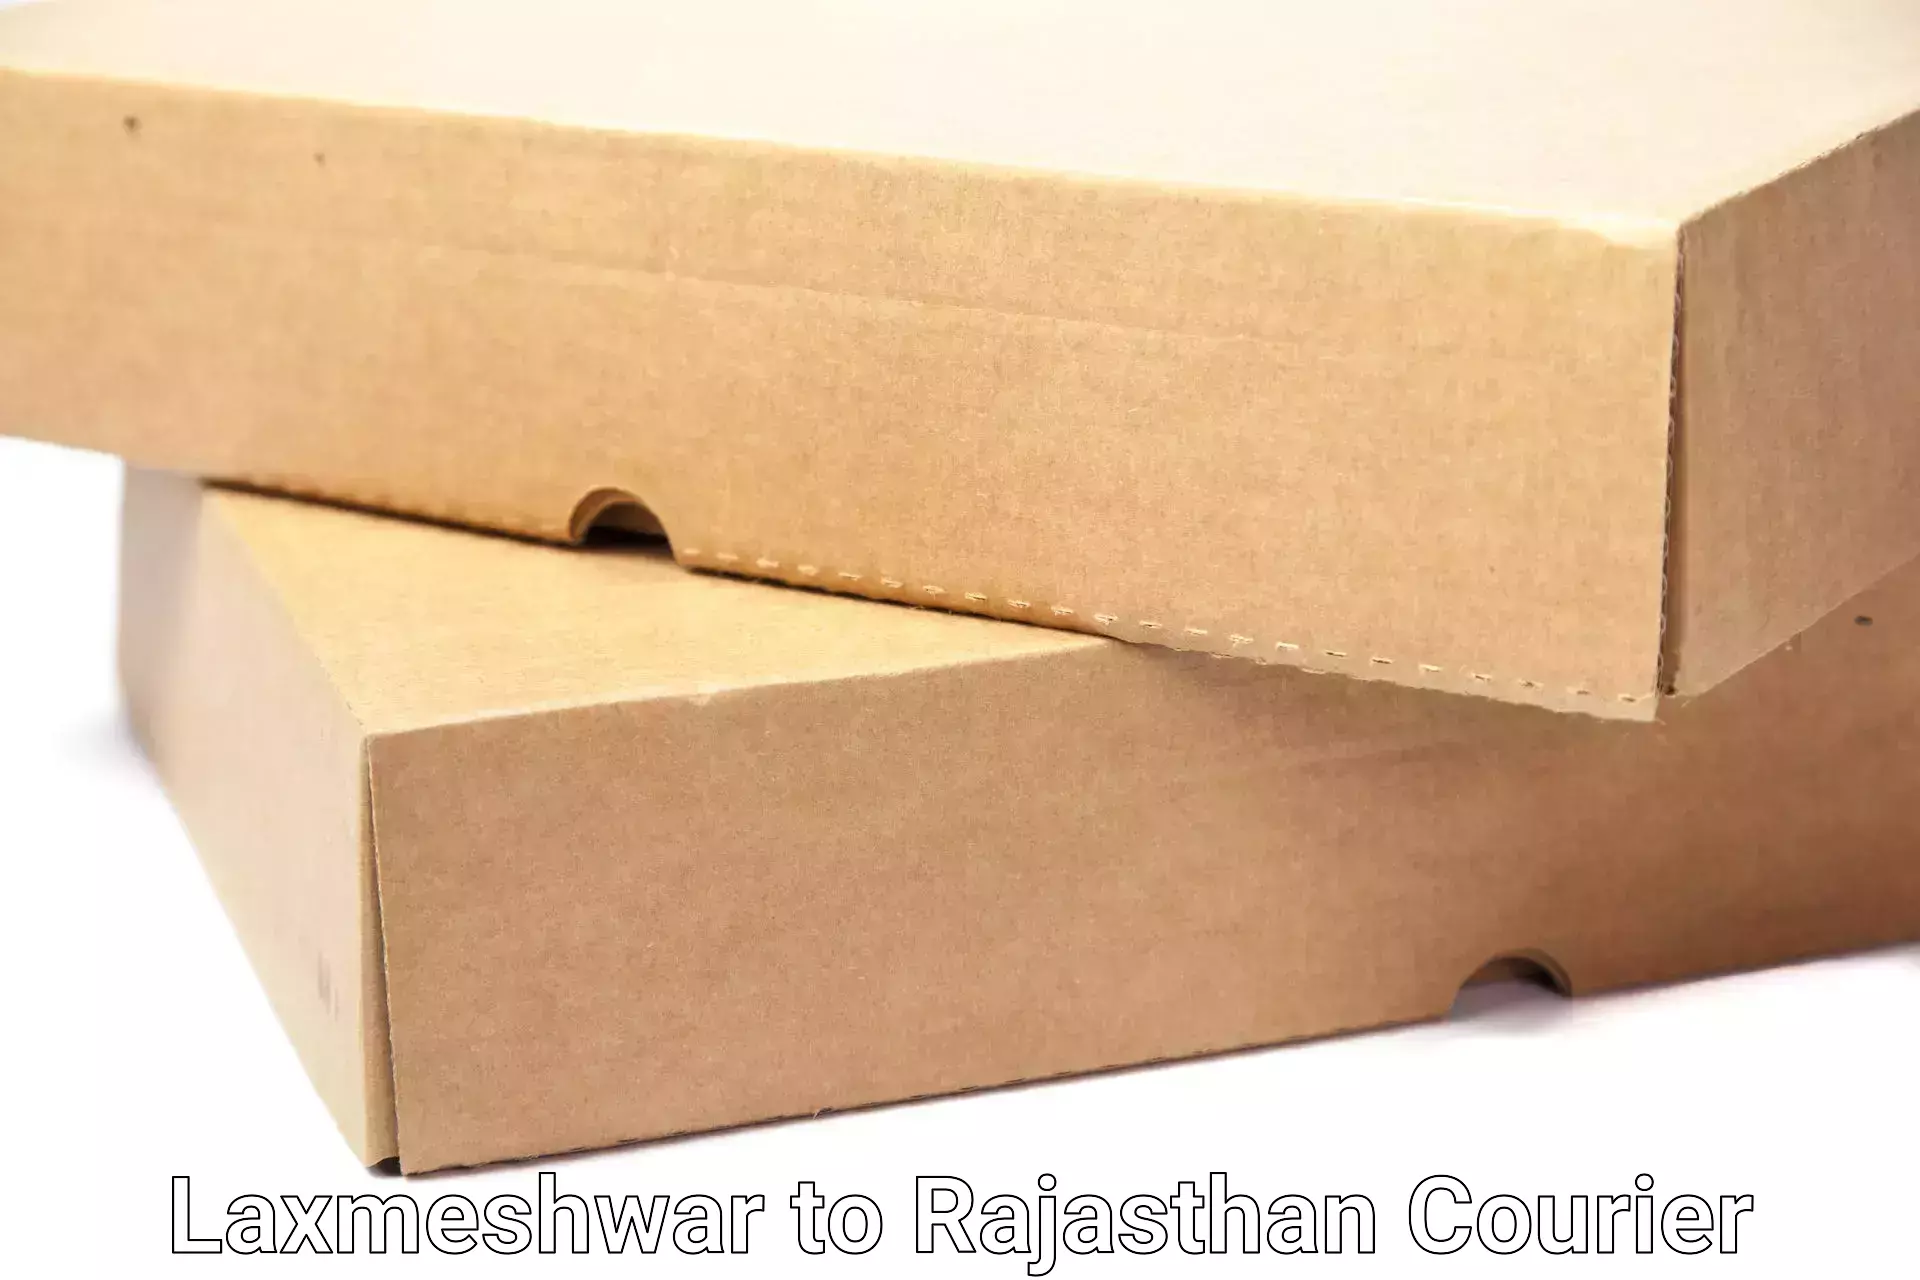 Furniture moving experts Laxmeshwar to Rajasthan